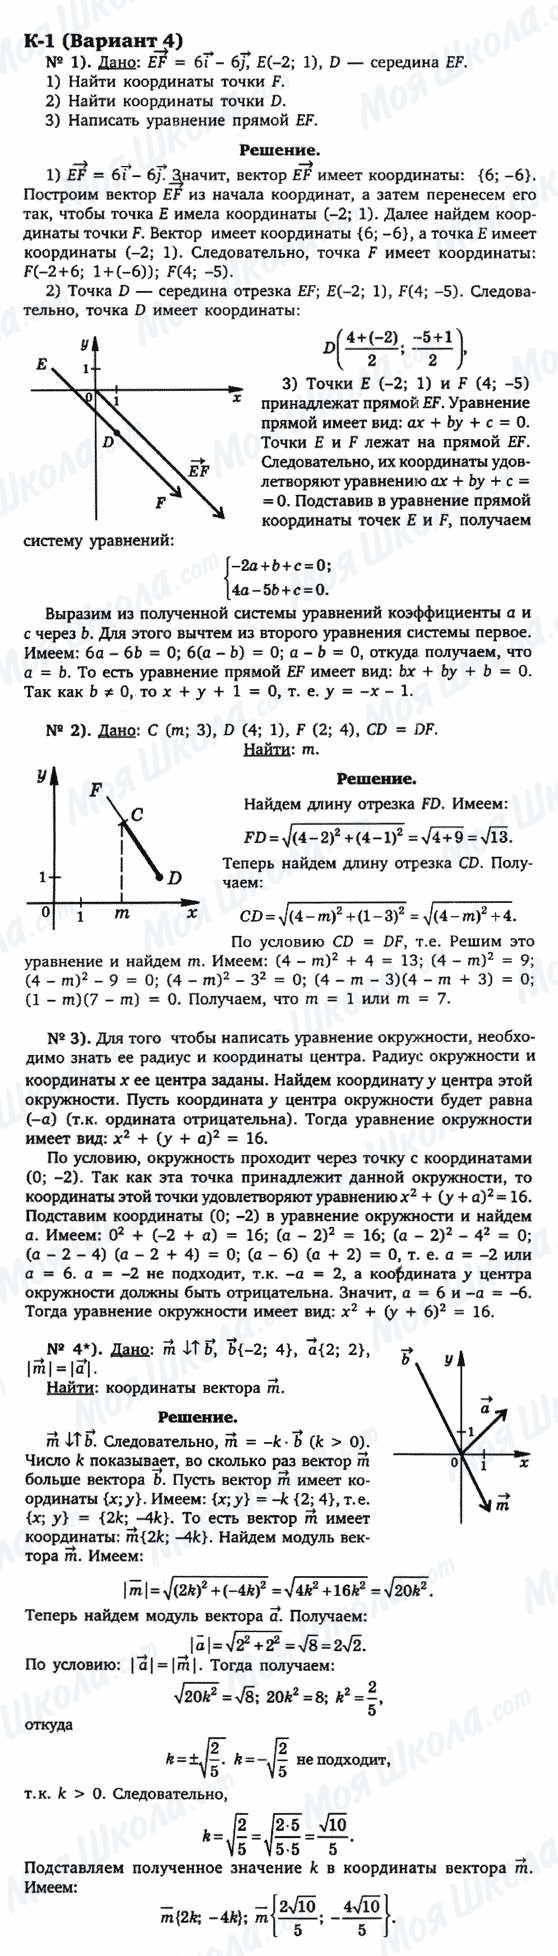 ГДЗ Геометрія 9 клас сторінка к-1(вариант 4)